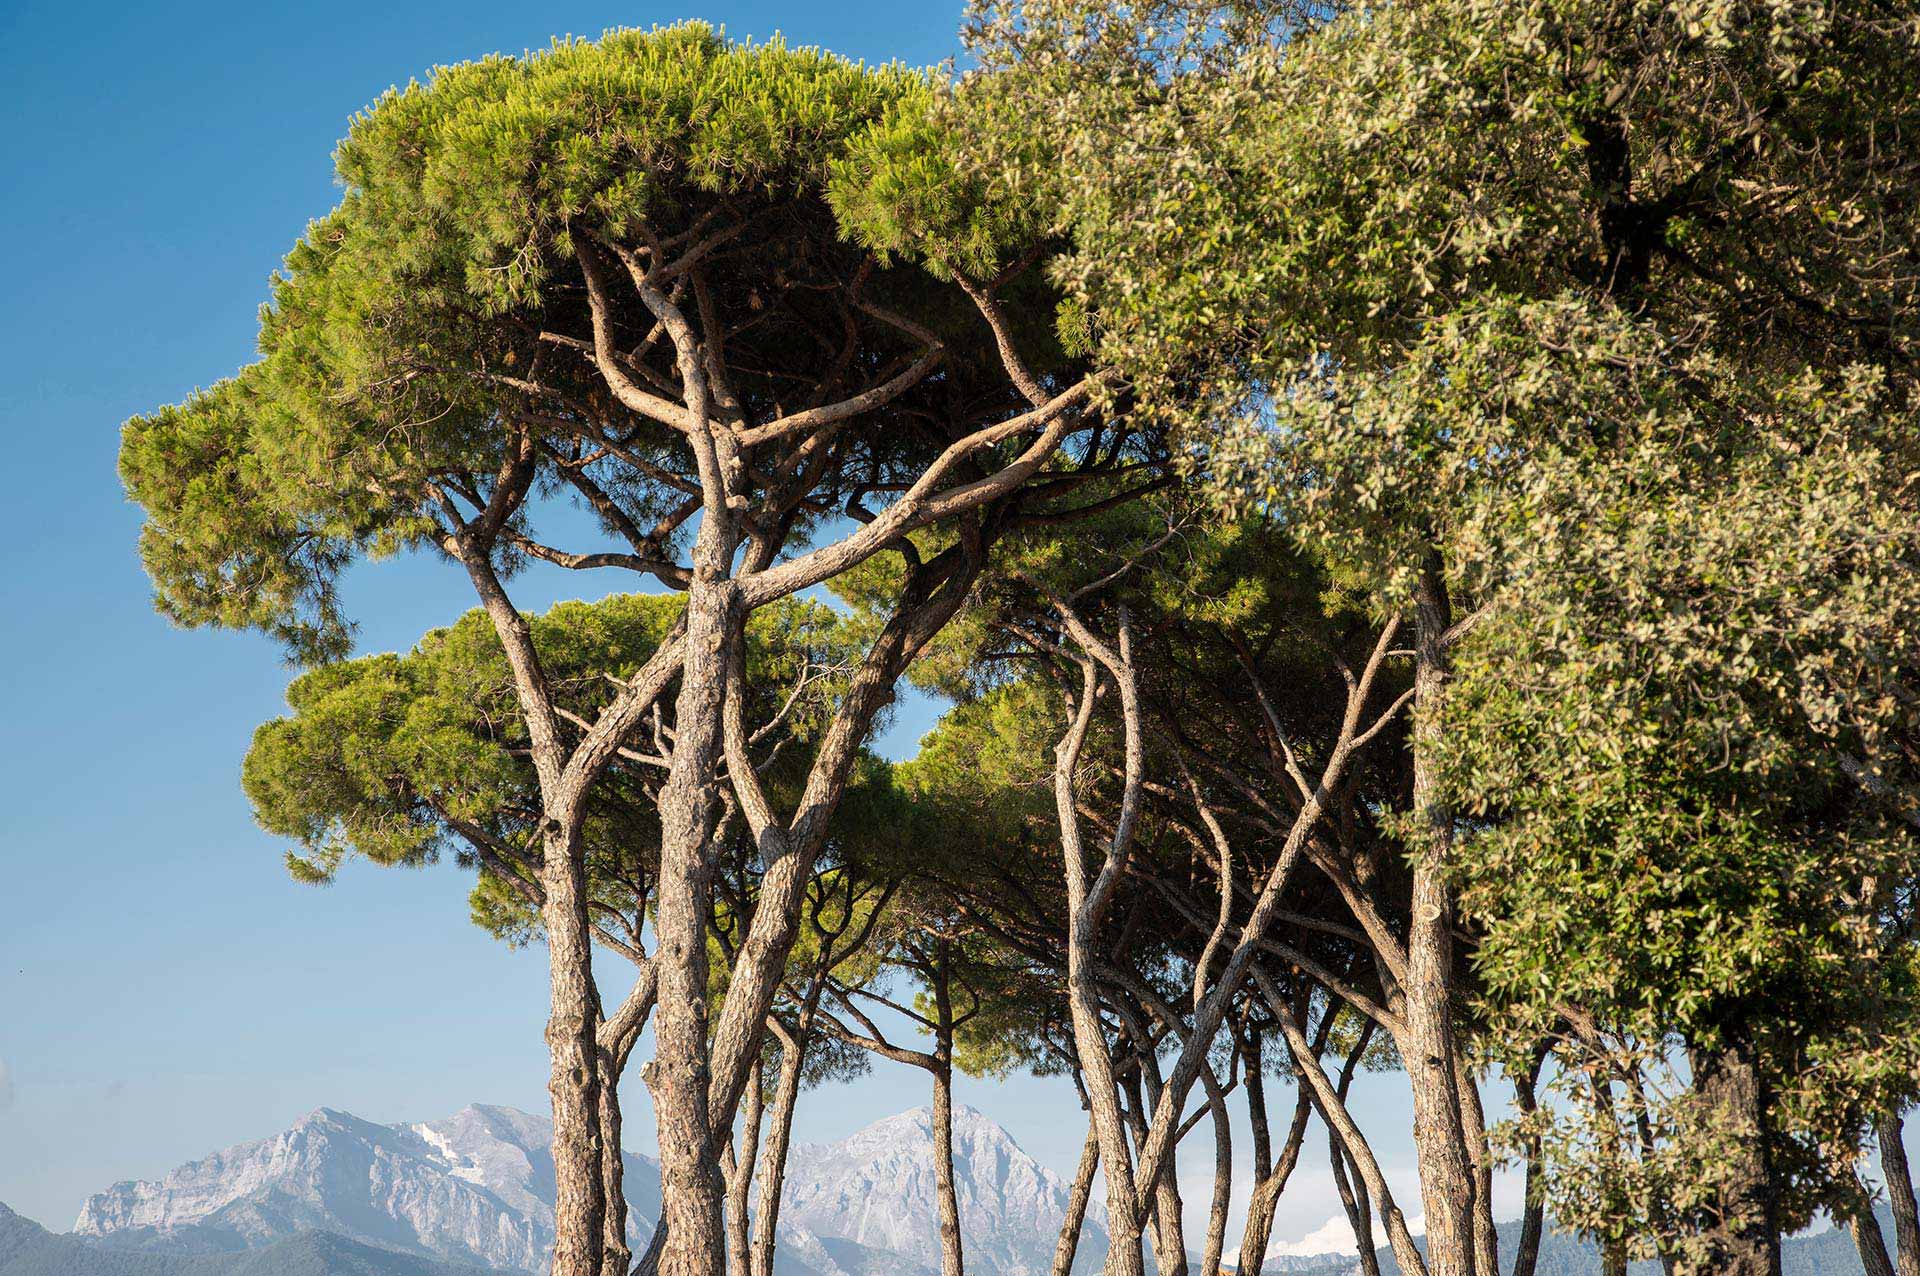 Lilly pineta si trova sotto una pineta ombreggiata in località La Partaccia.